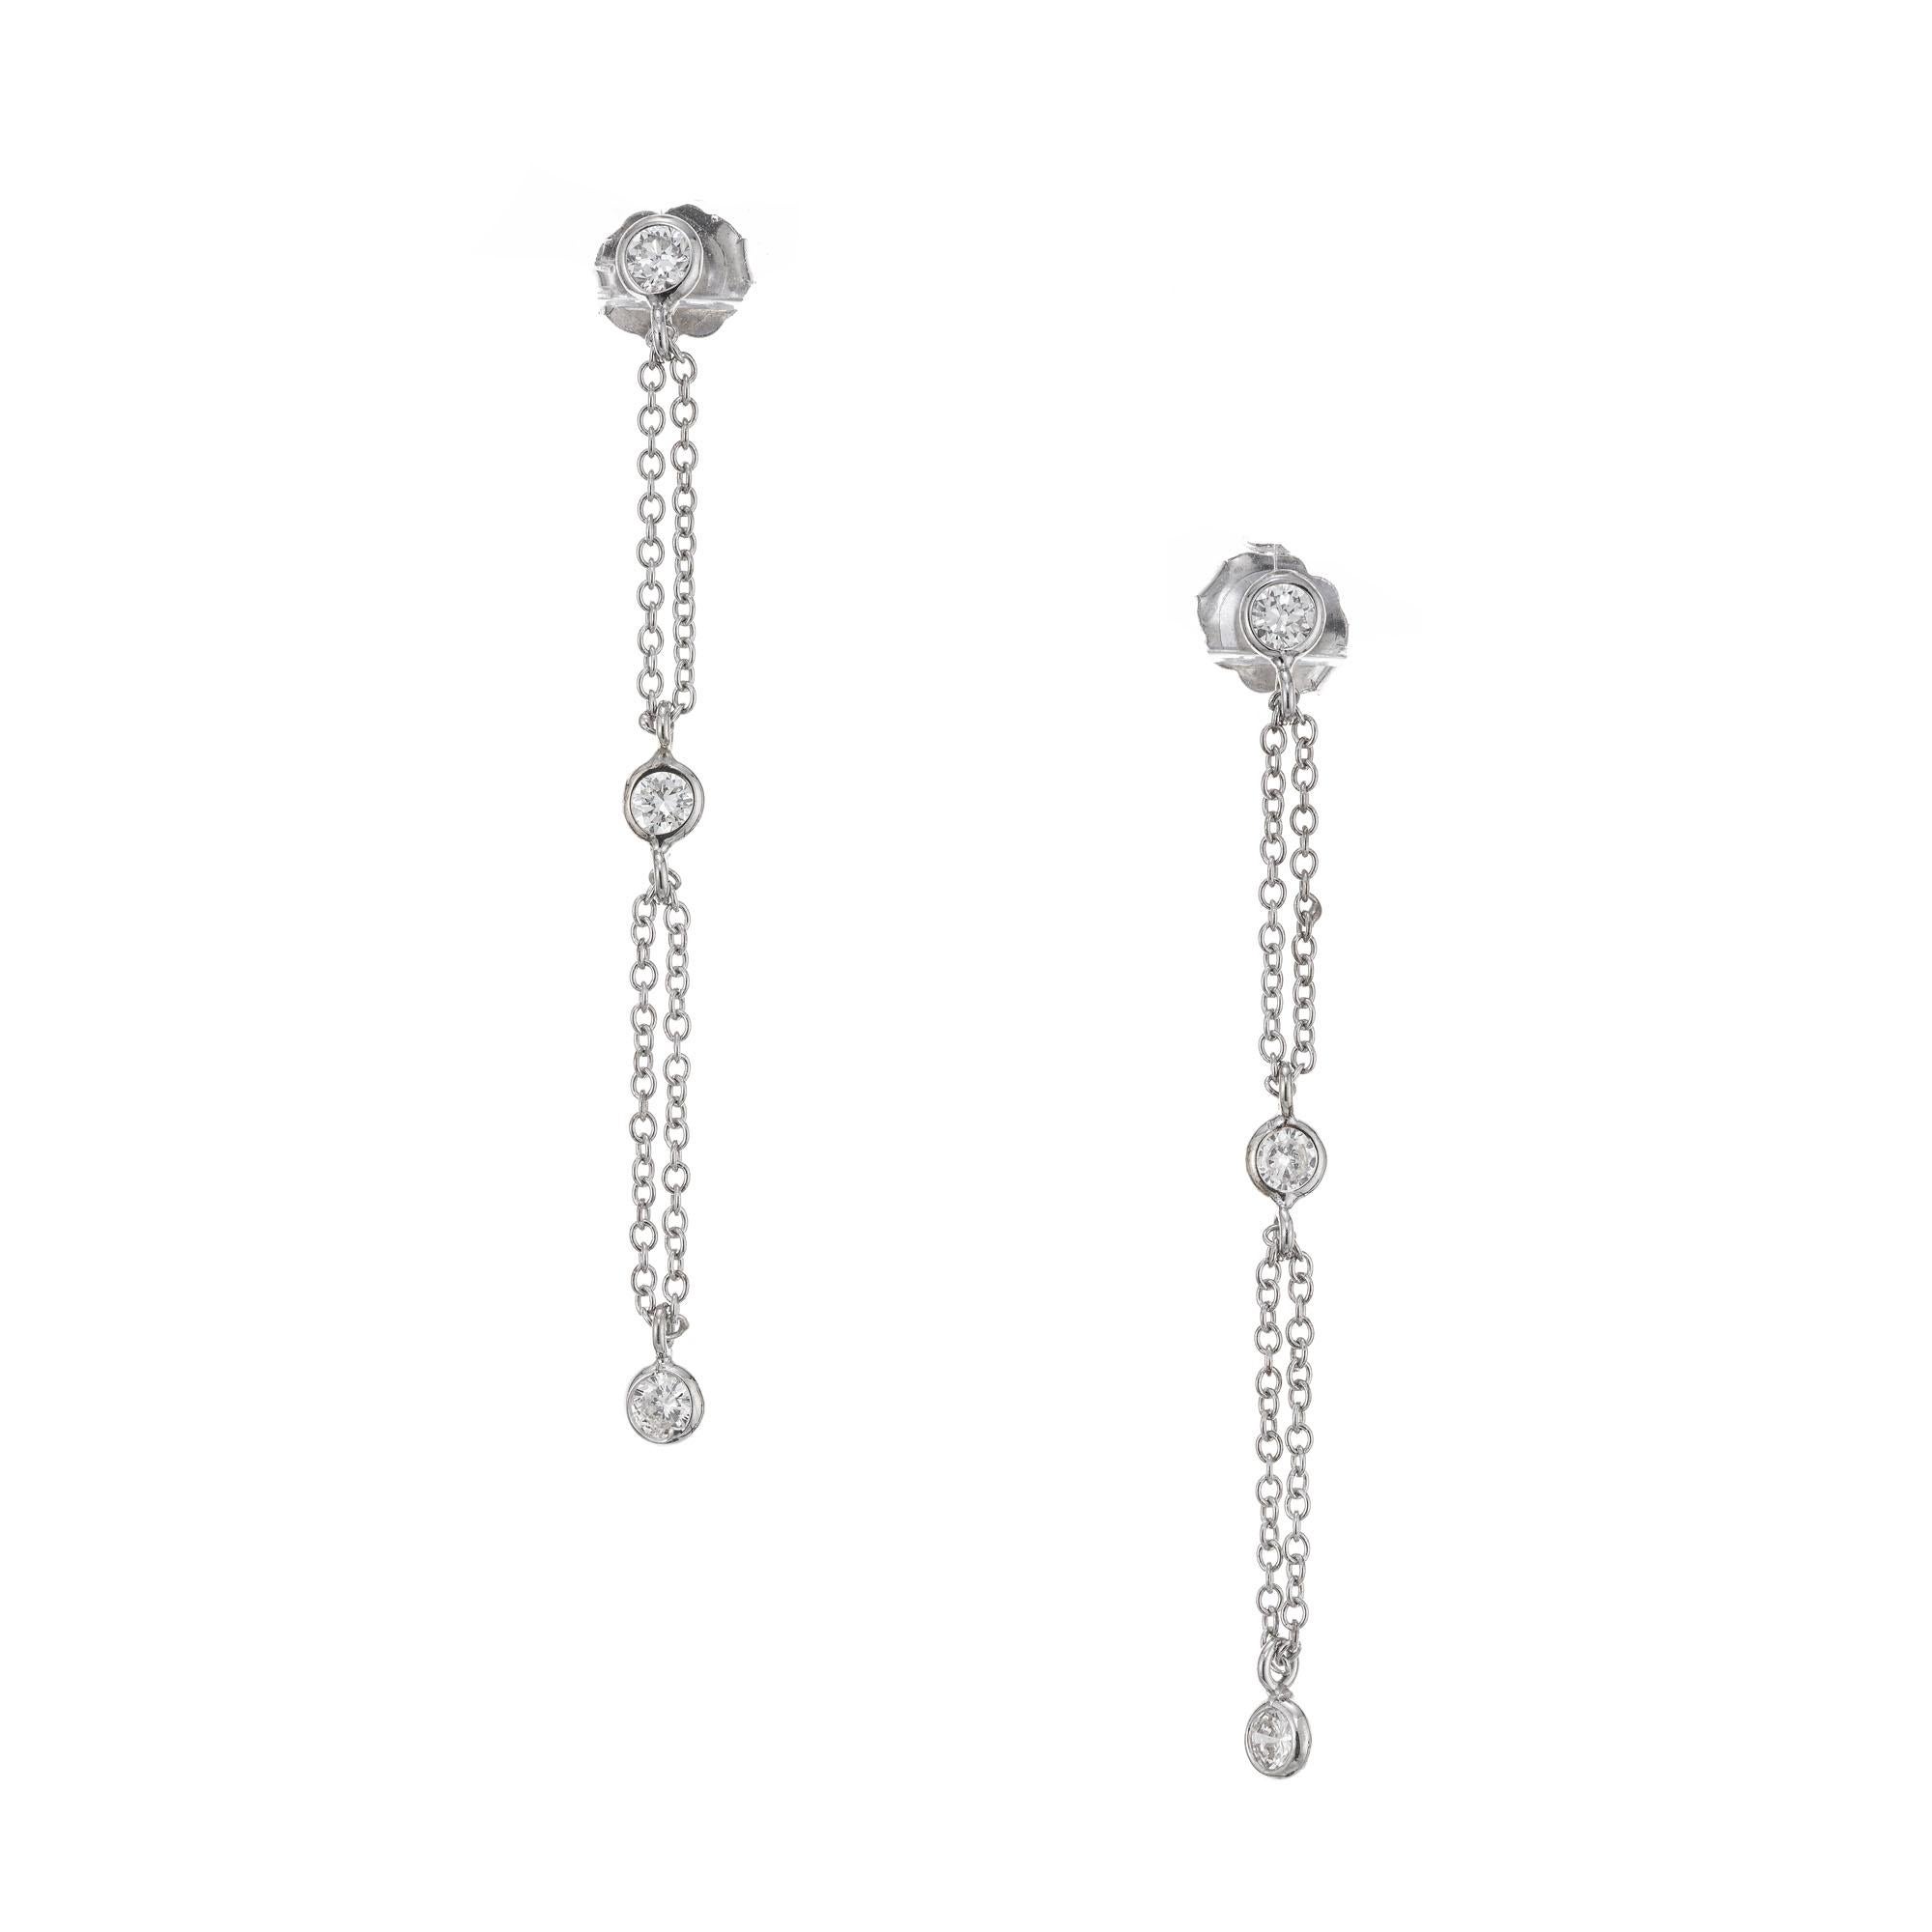 Boucles d'oreilles pendantes Peter Suchy en forme de diamant par mètre. 6 diamants sertis en chaton reliés par une boucle continue de double chaîne qui flotte librement à travers l'anneau de saut sur le diamant. Les billes sont de 3,3 mm et la